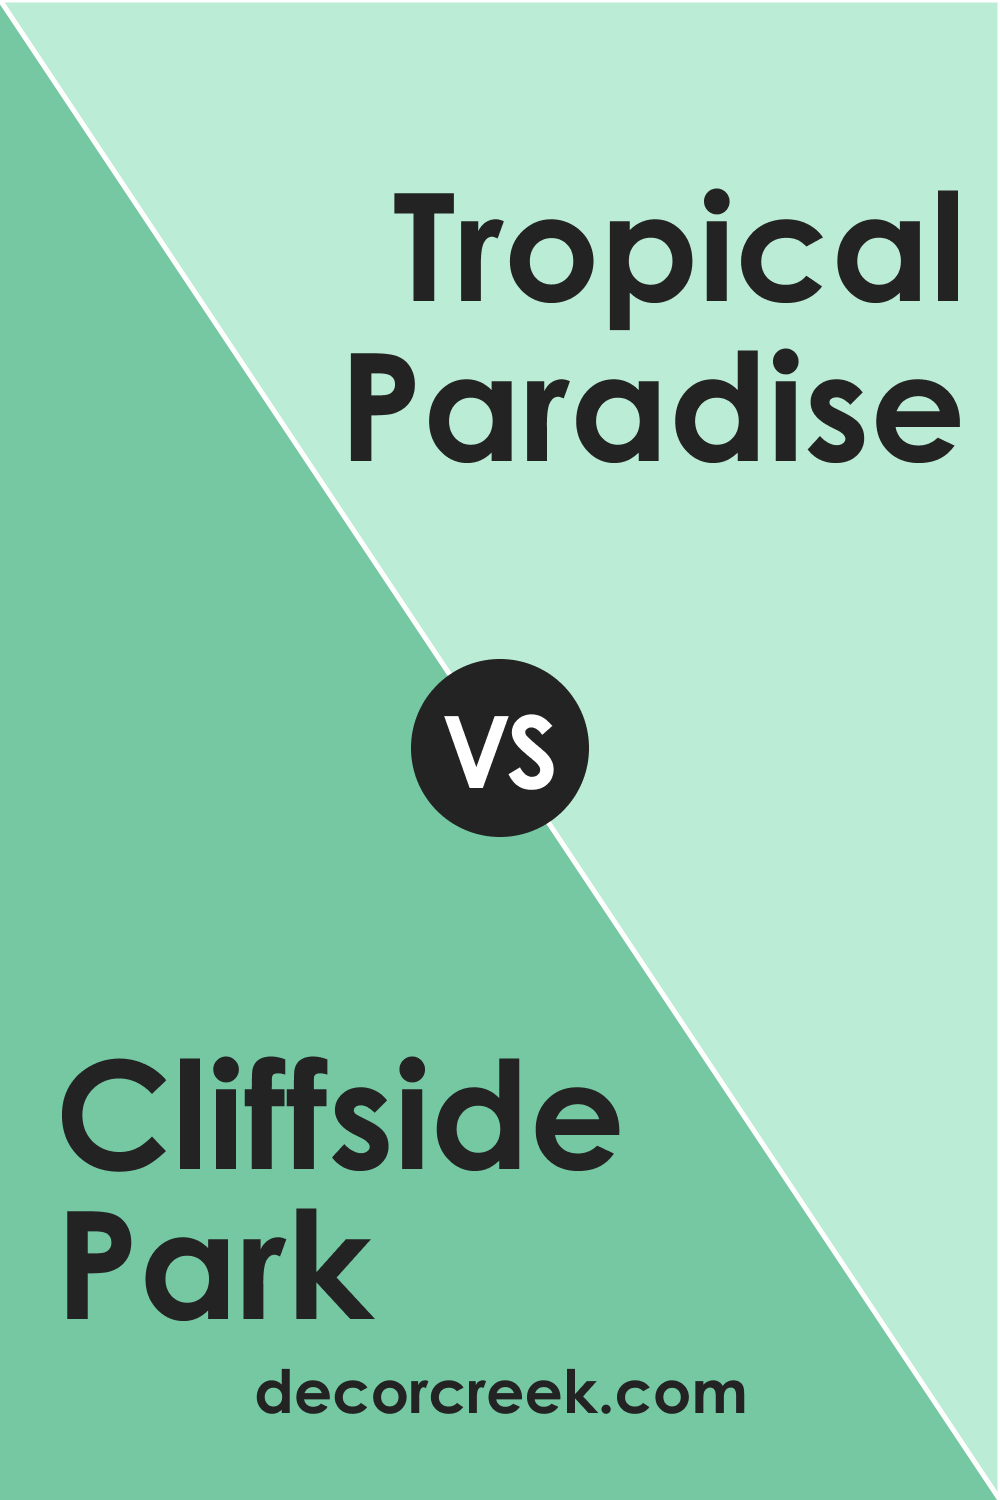 Cliffside Park 579 vs. BM 575 Tropical Paradise